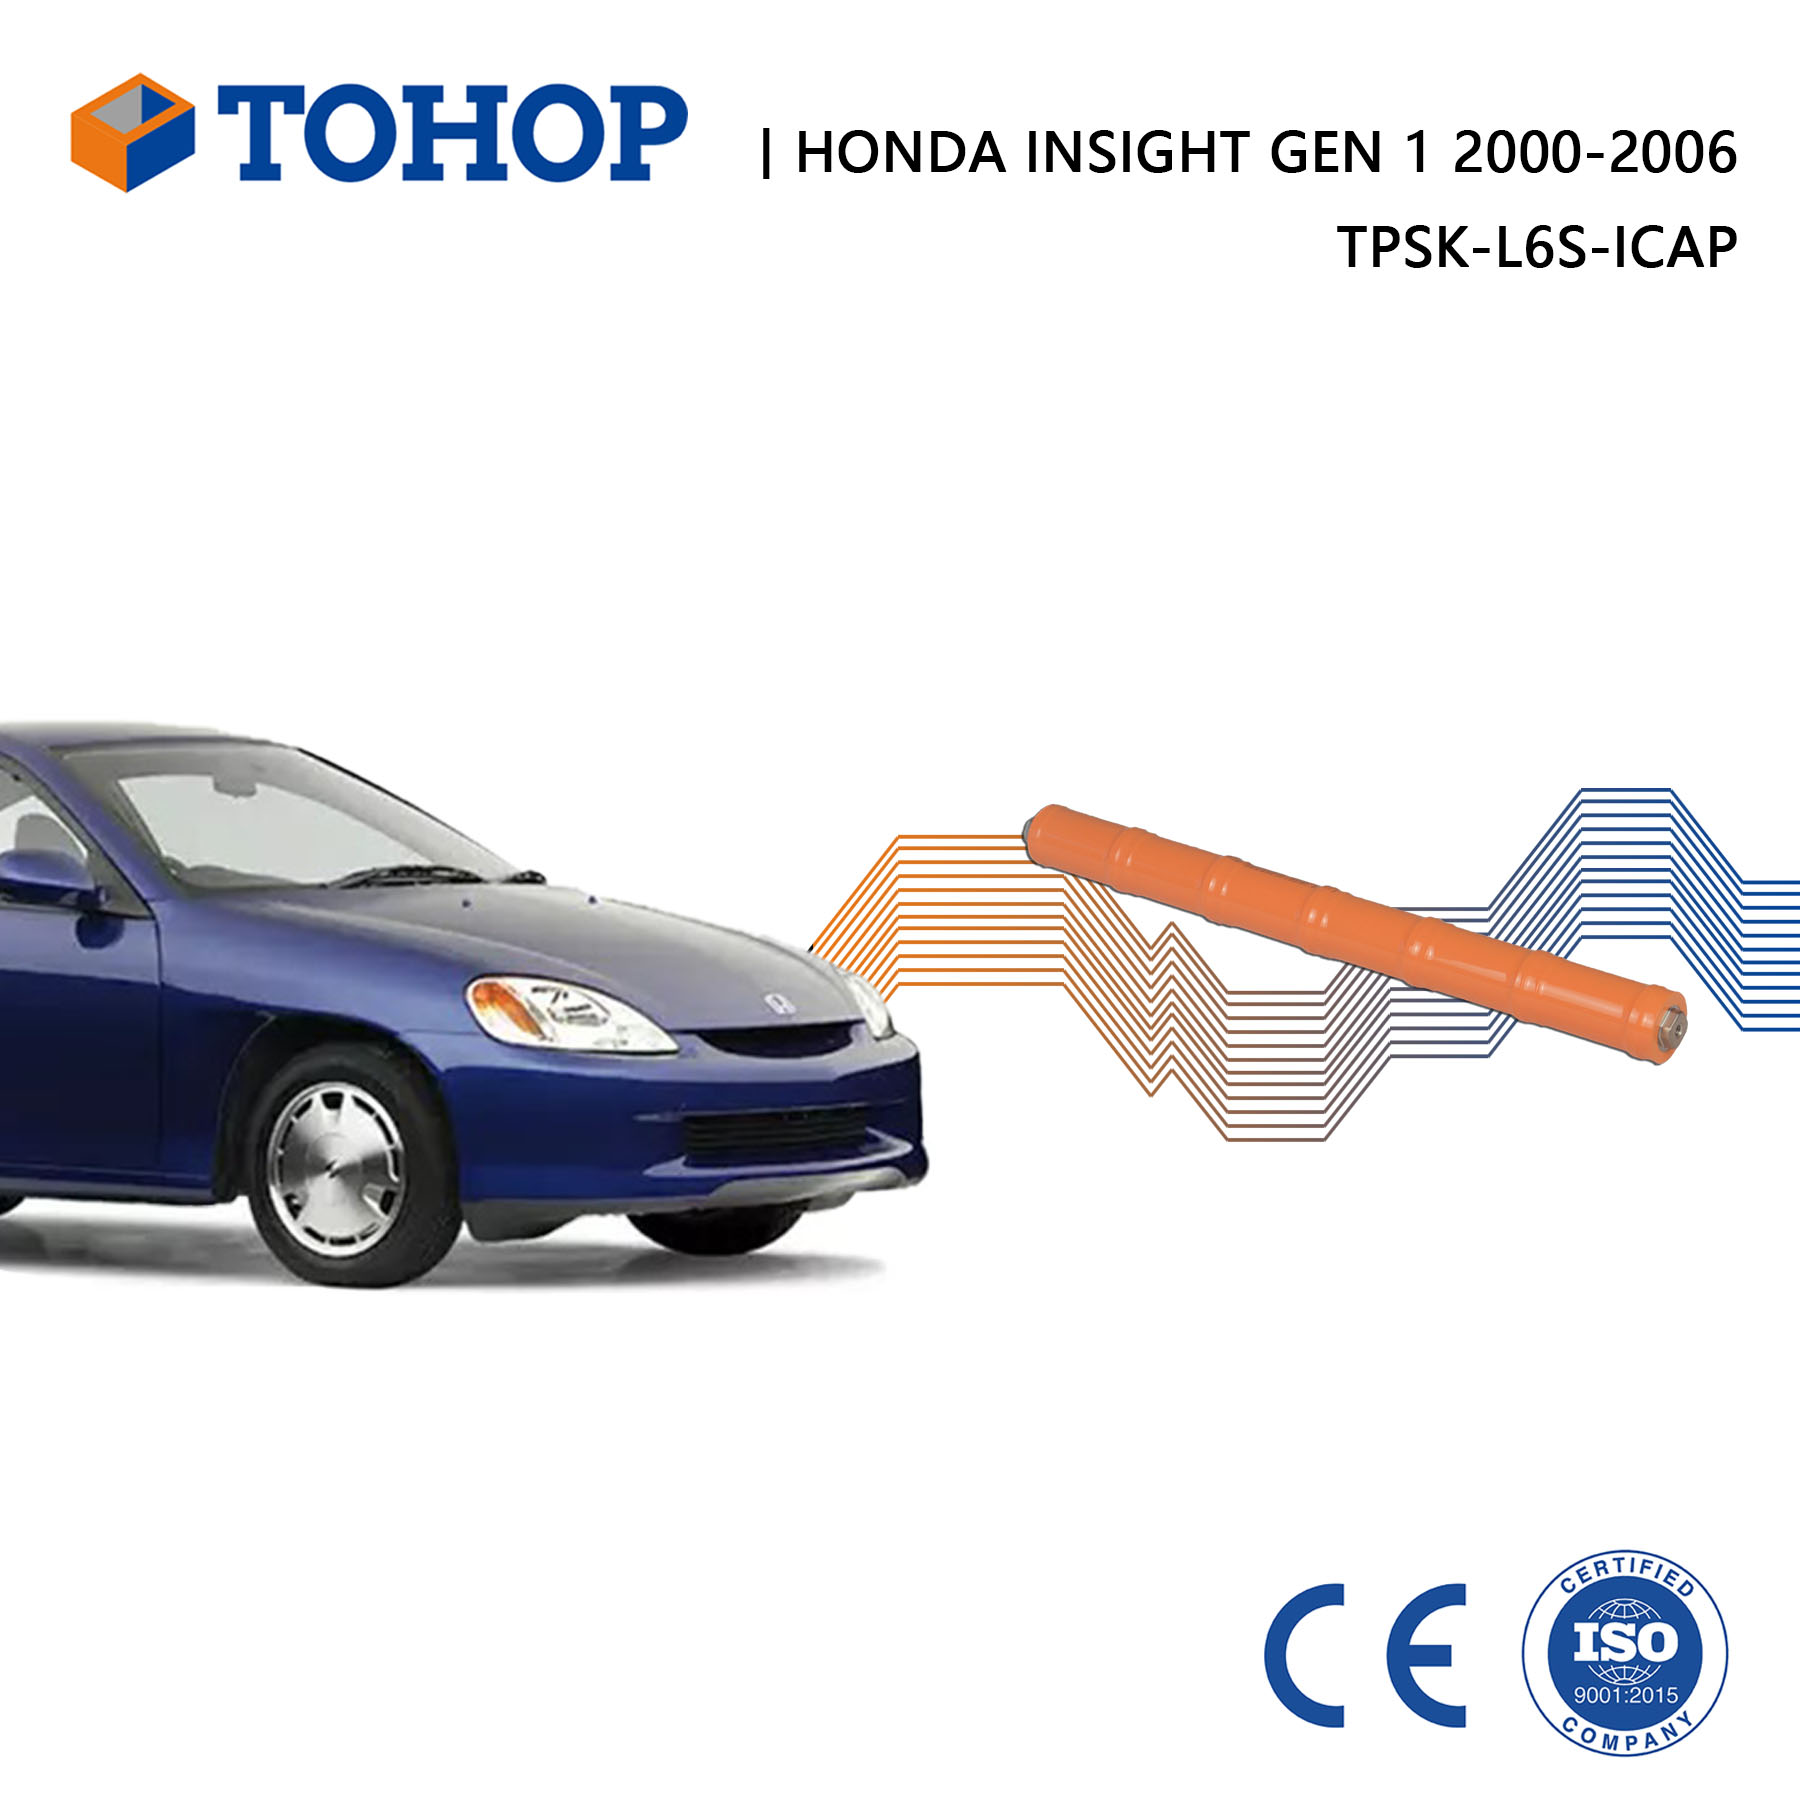 Insight Gen.1 Brand New 7.2V 6.5Ah Hybrid Battery for Honda